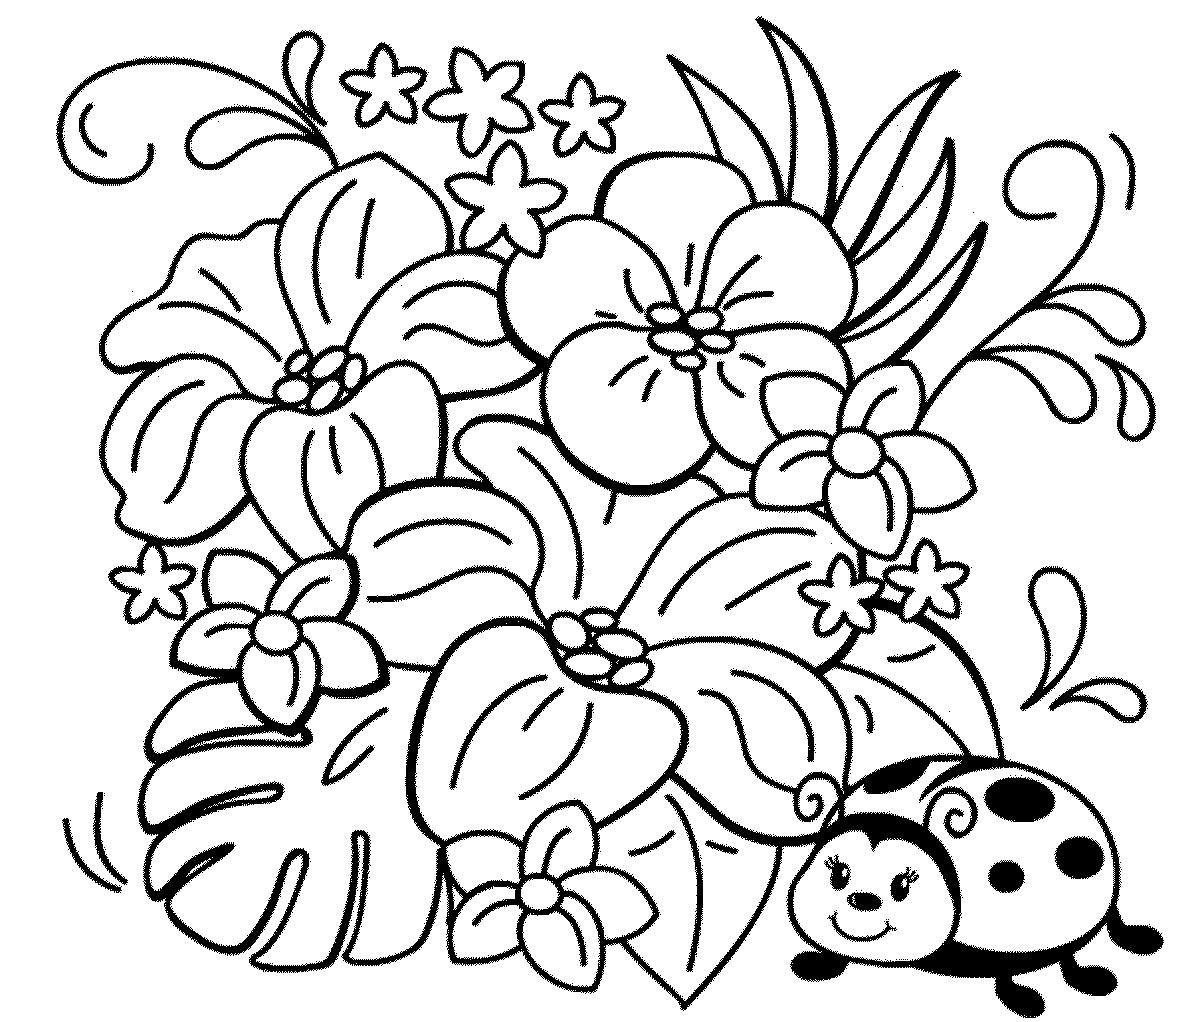 Цветы. Растения. Раскраски для детей на тему цветы. Раскраски цветы. Раскраски для деток с разными цветами. Скачать раскраски с цветами.                        